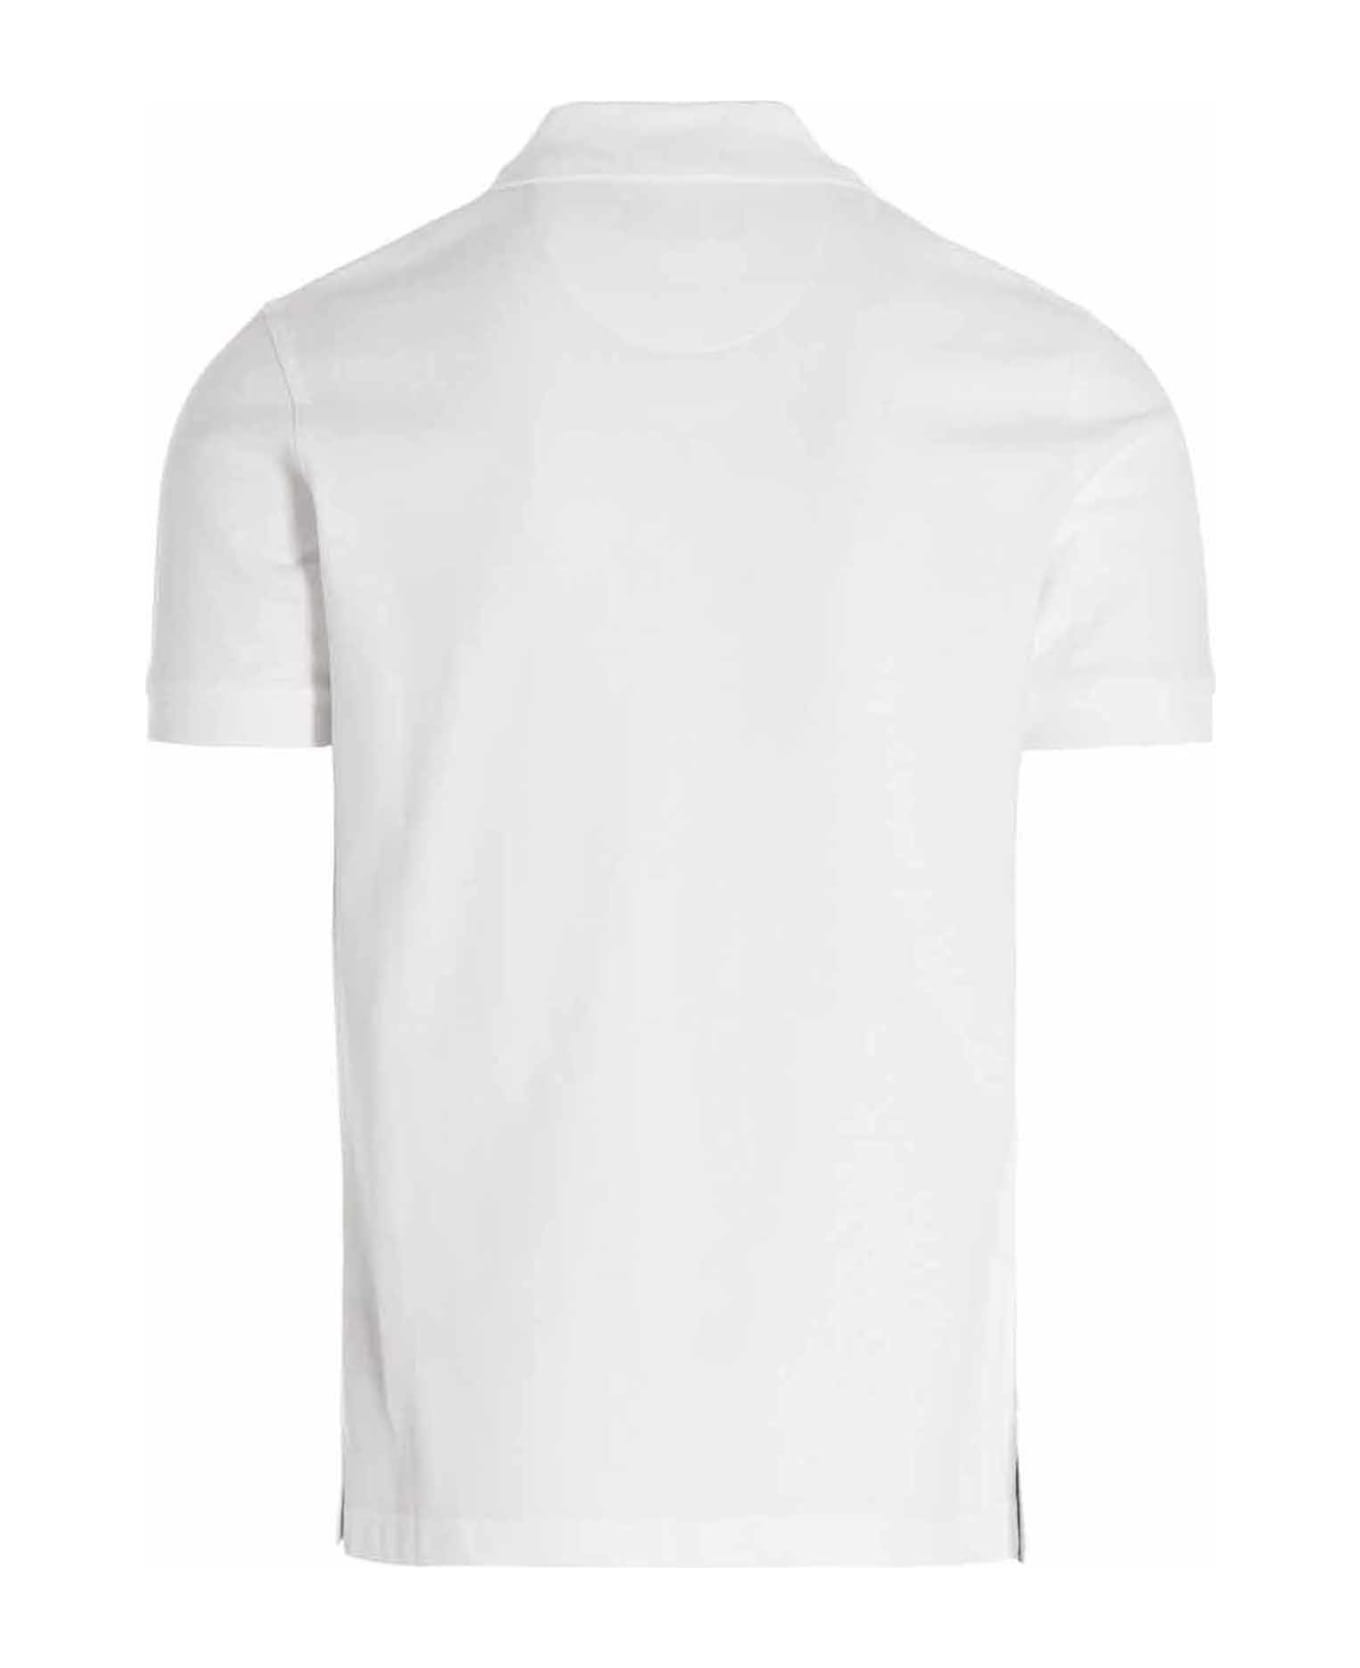 Barbour 'tartan' Polo Shirt - Bianco